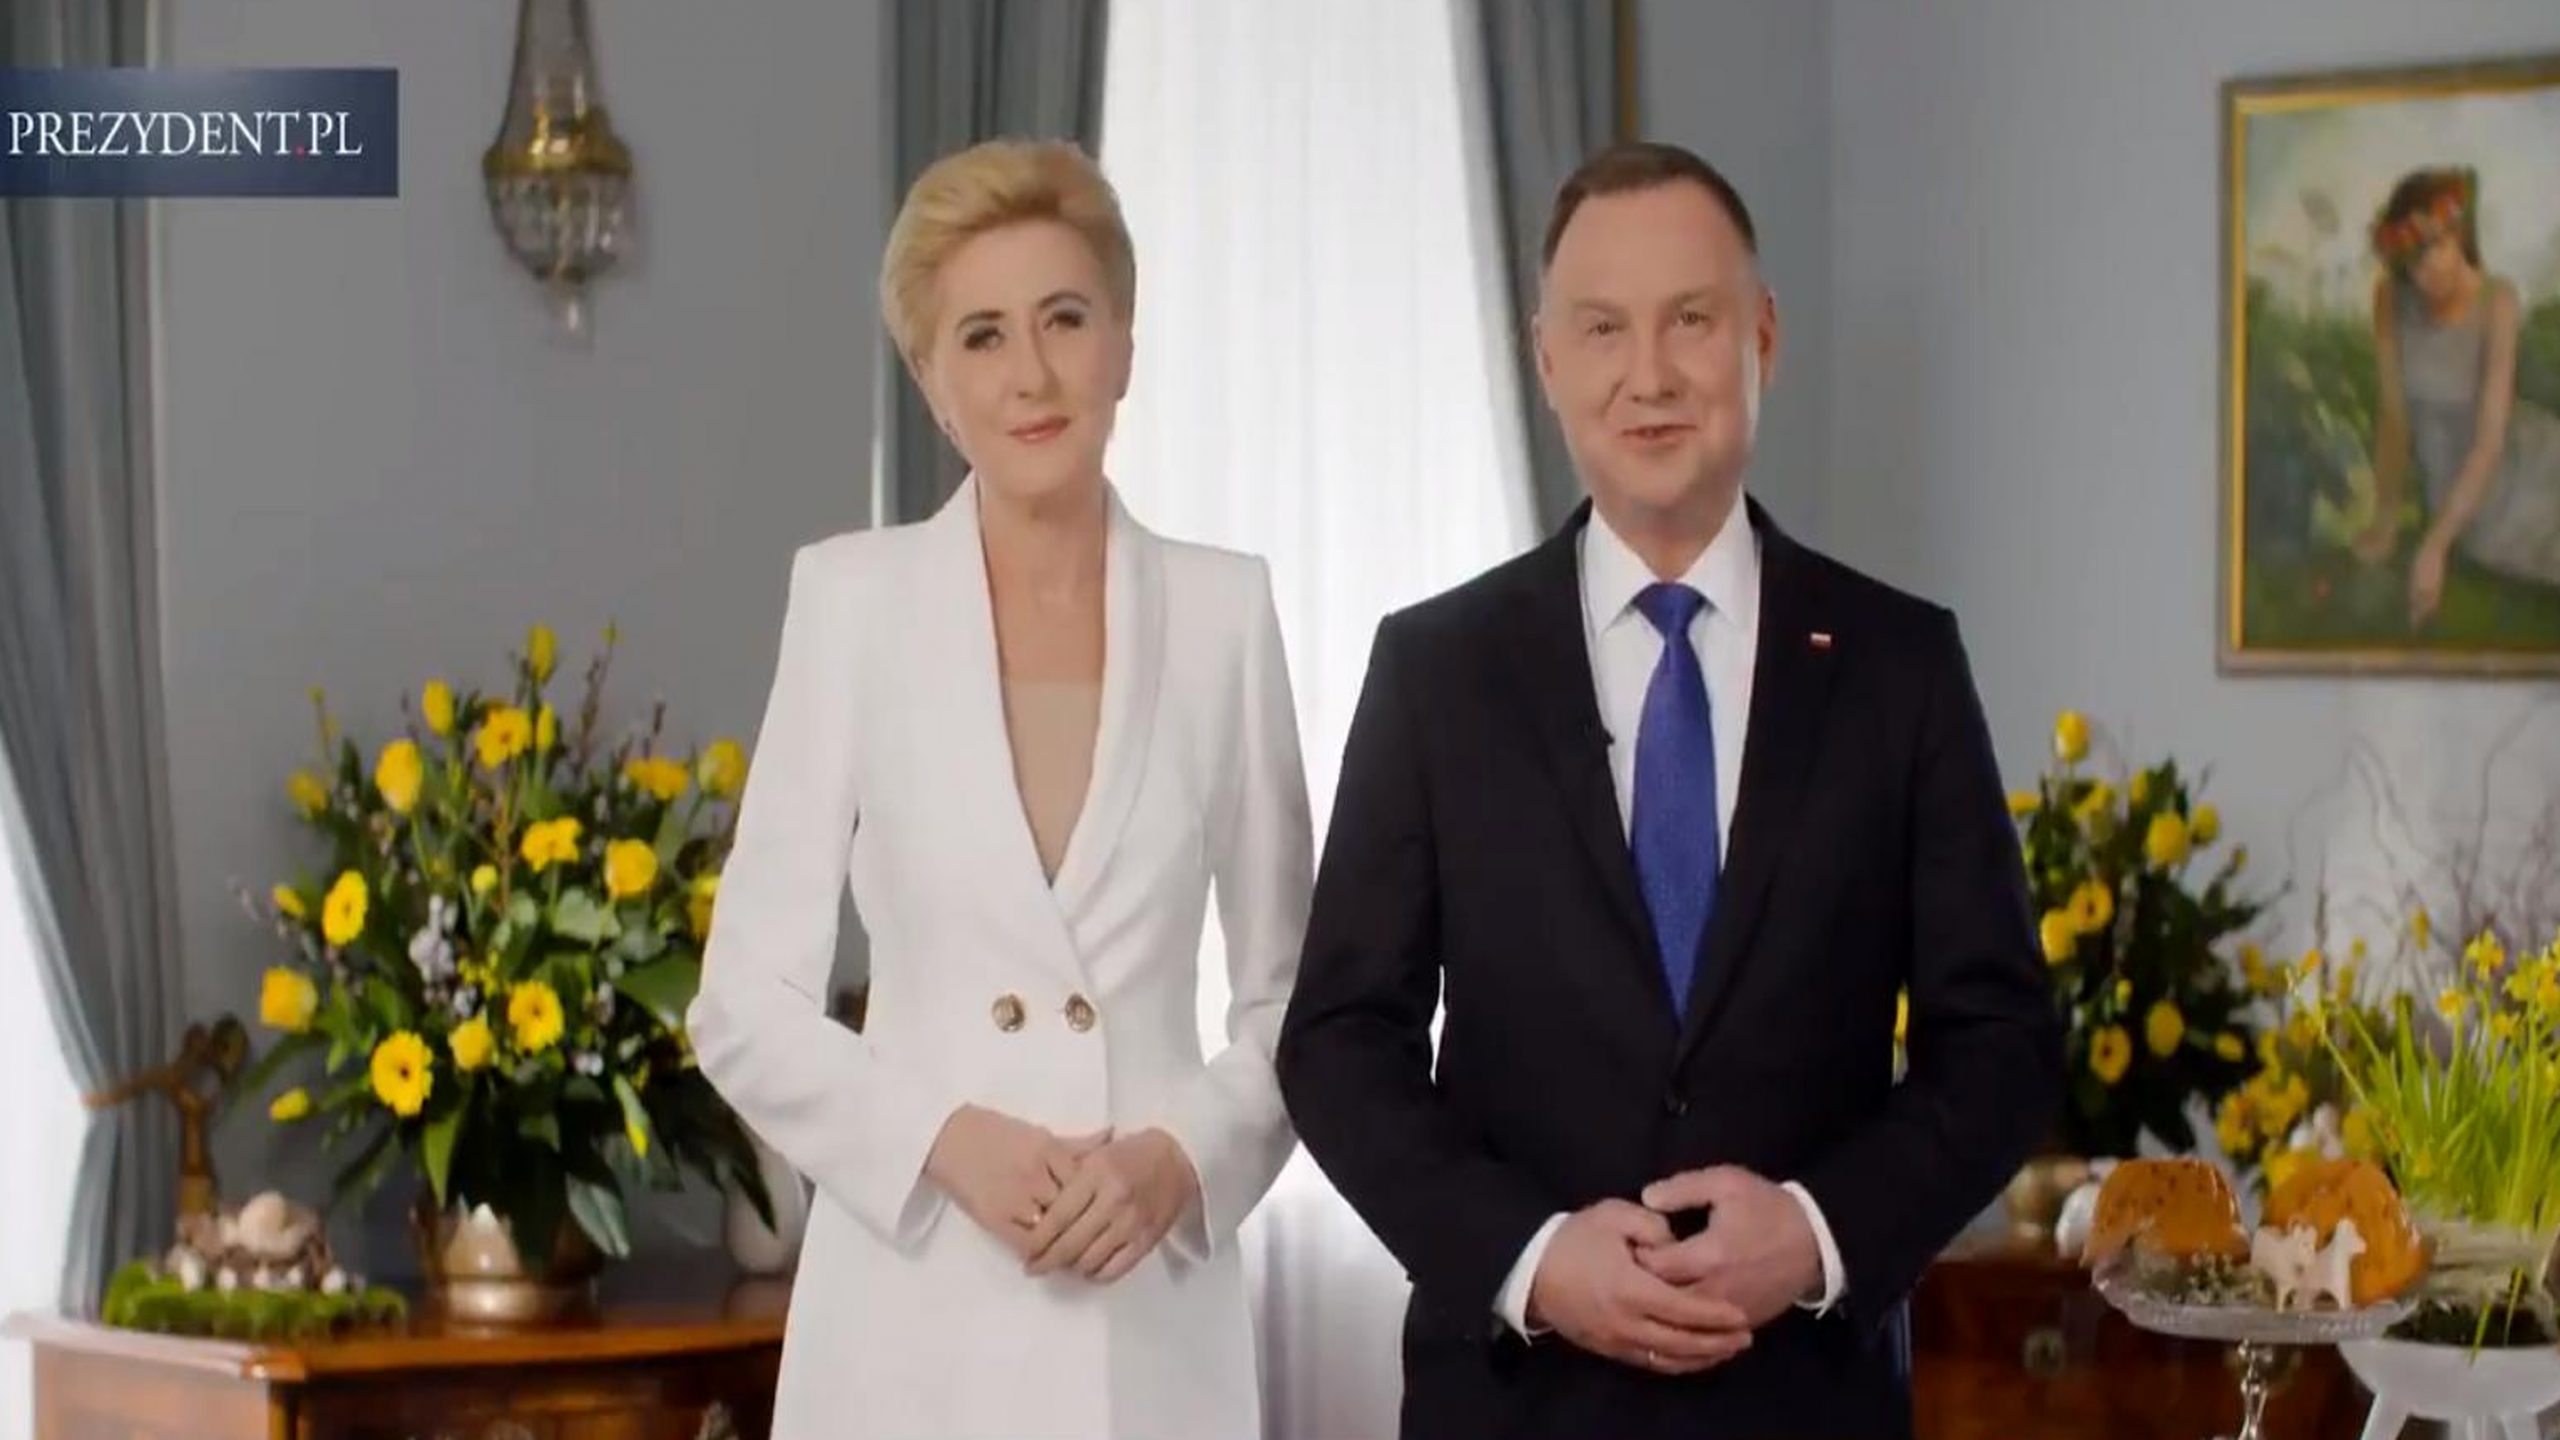 propolski.pl: Życzenia wielkanocne pary prezydenckiej